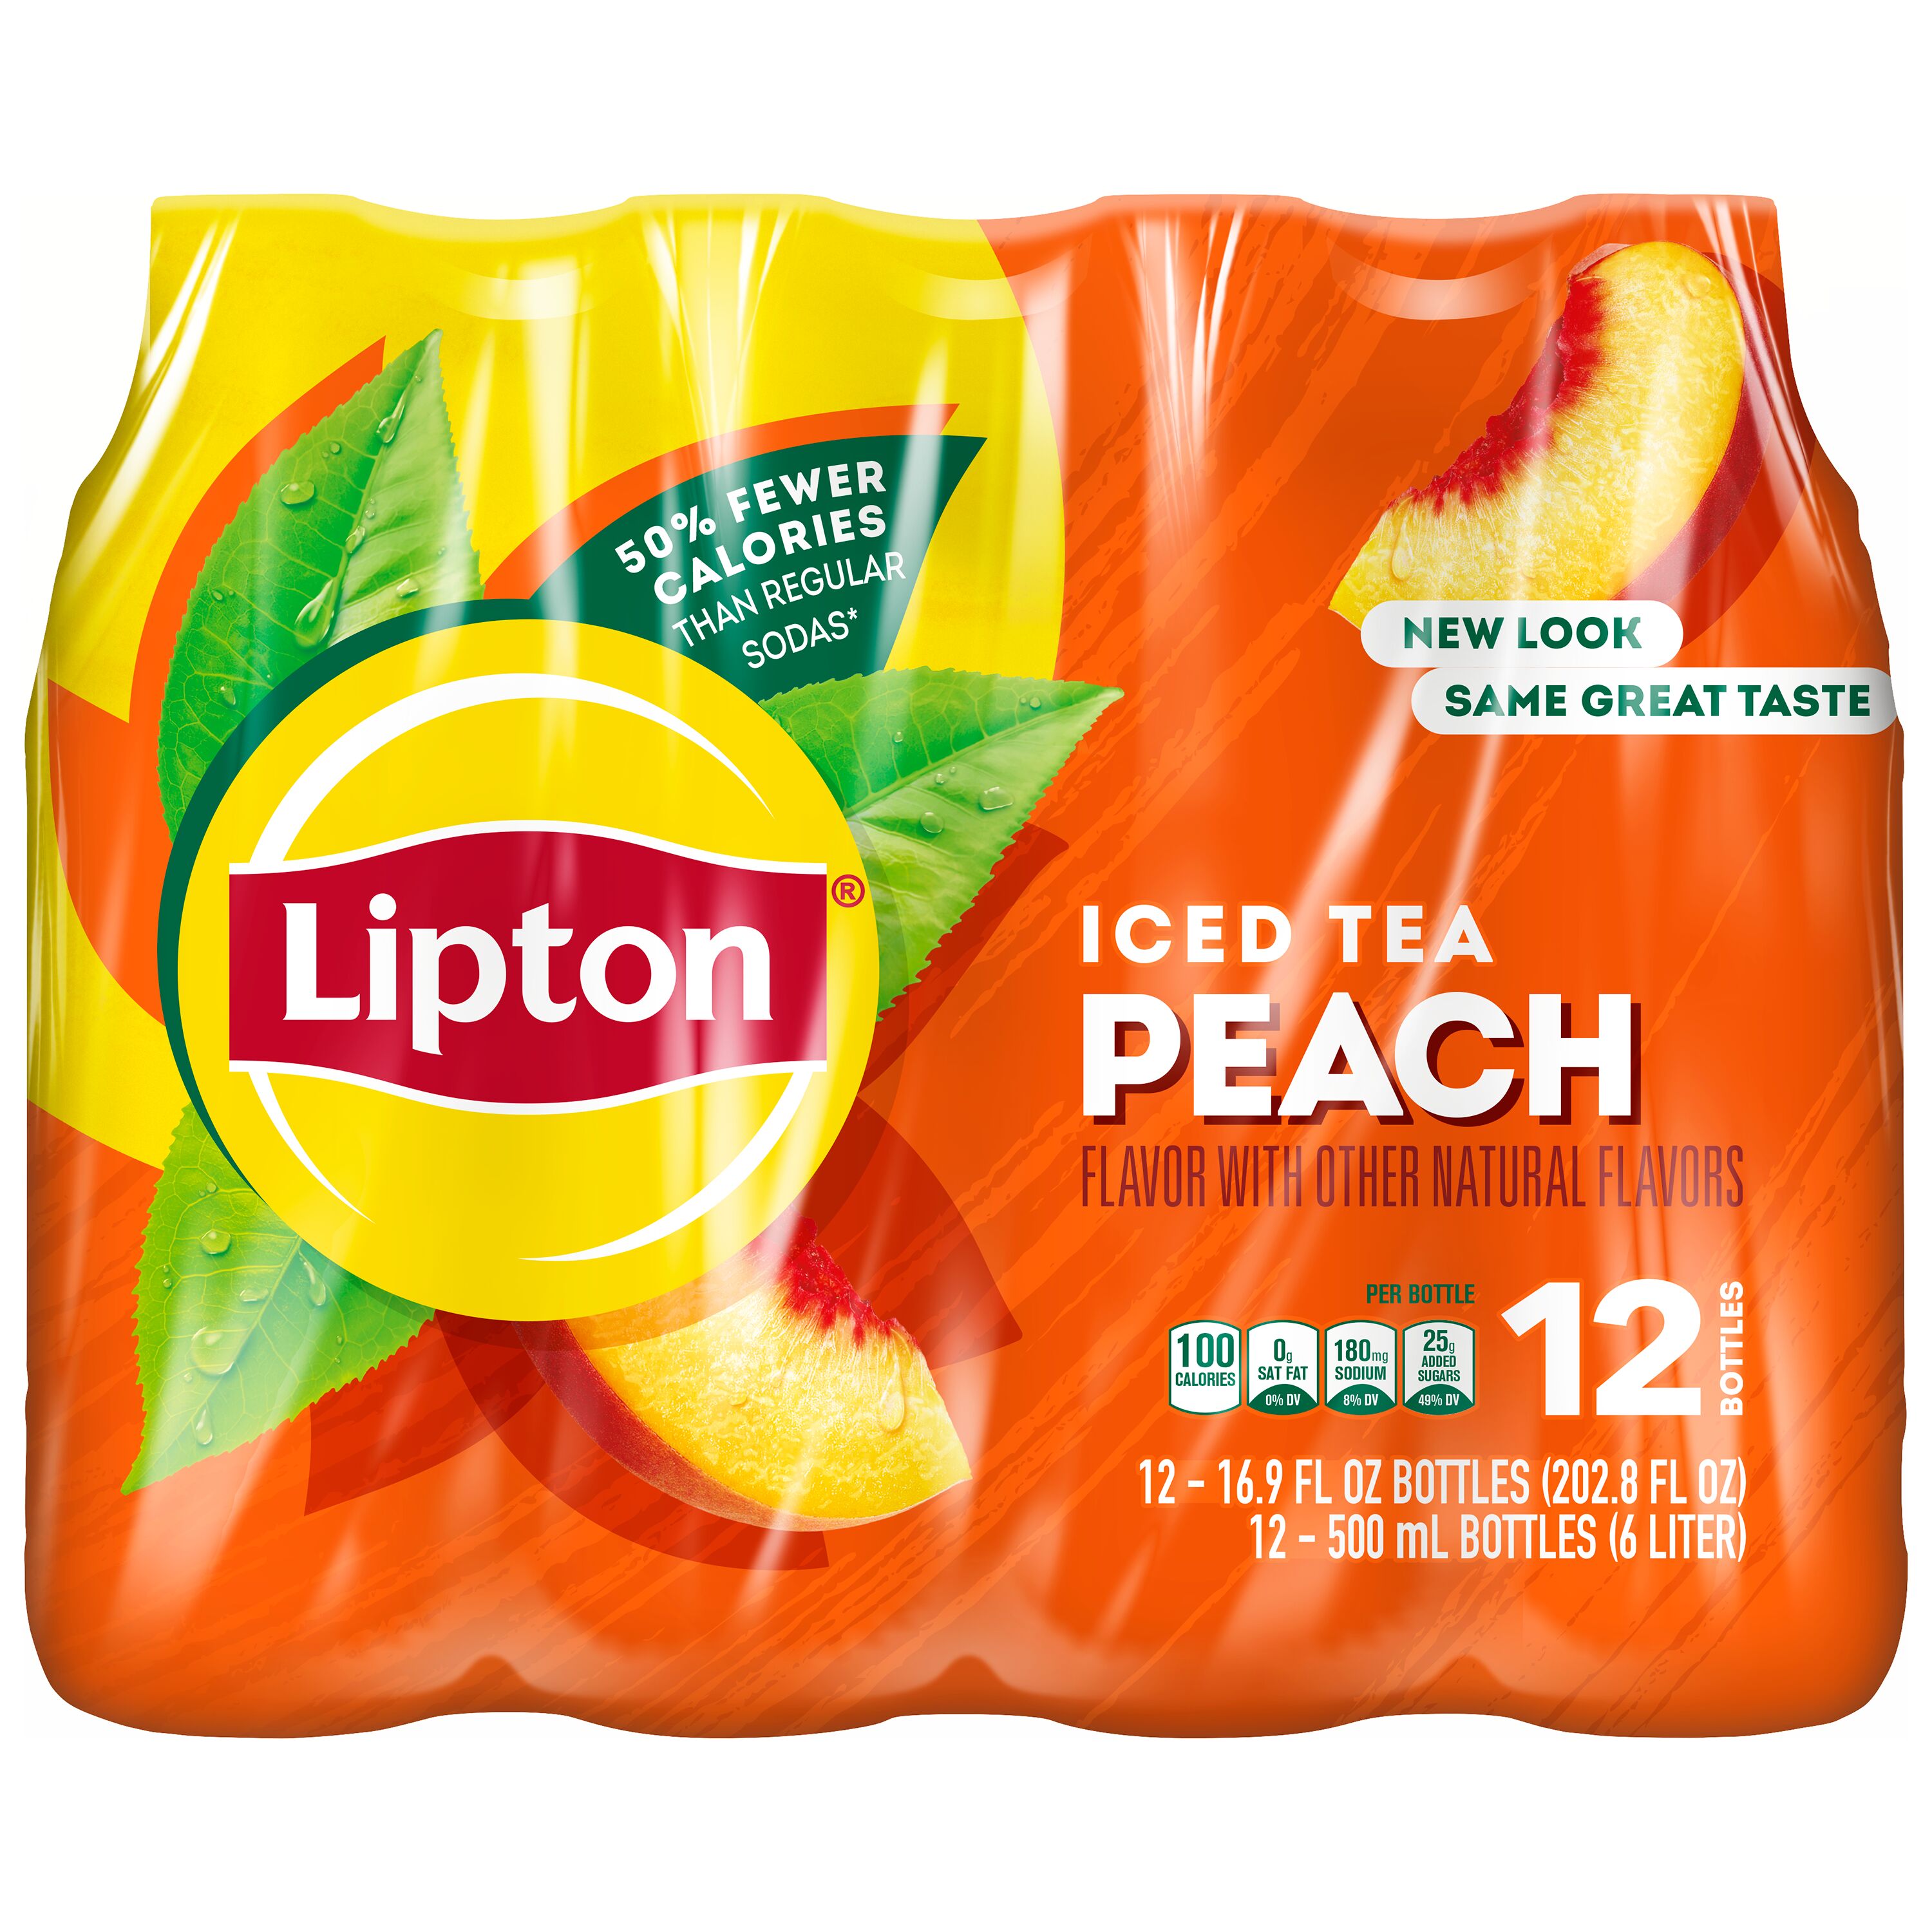 Lipton Peach Iced Tea, Bottled Tea Drink, 16.9 fl oz, 12 Pack Bottles - image 2 of 6